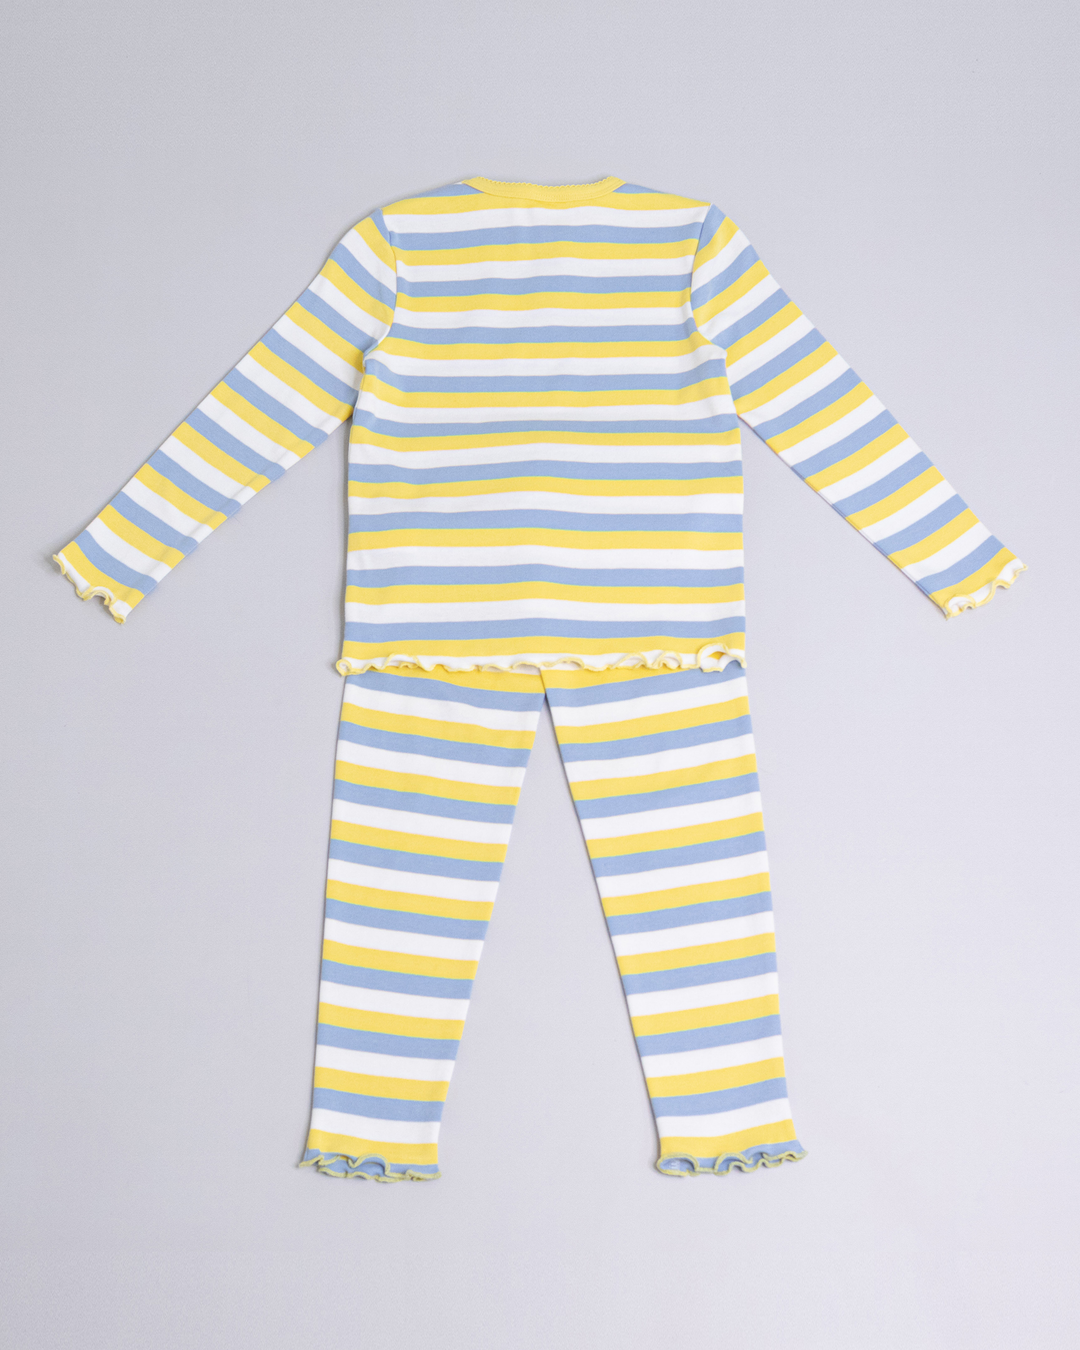 Pijama de rayas de color amarillo, blanco y azul